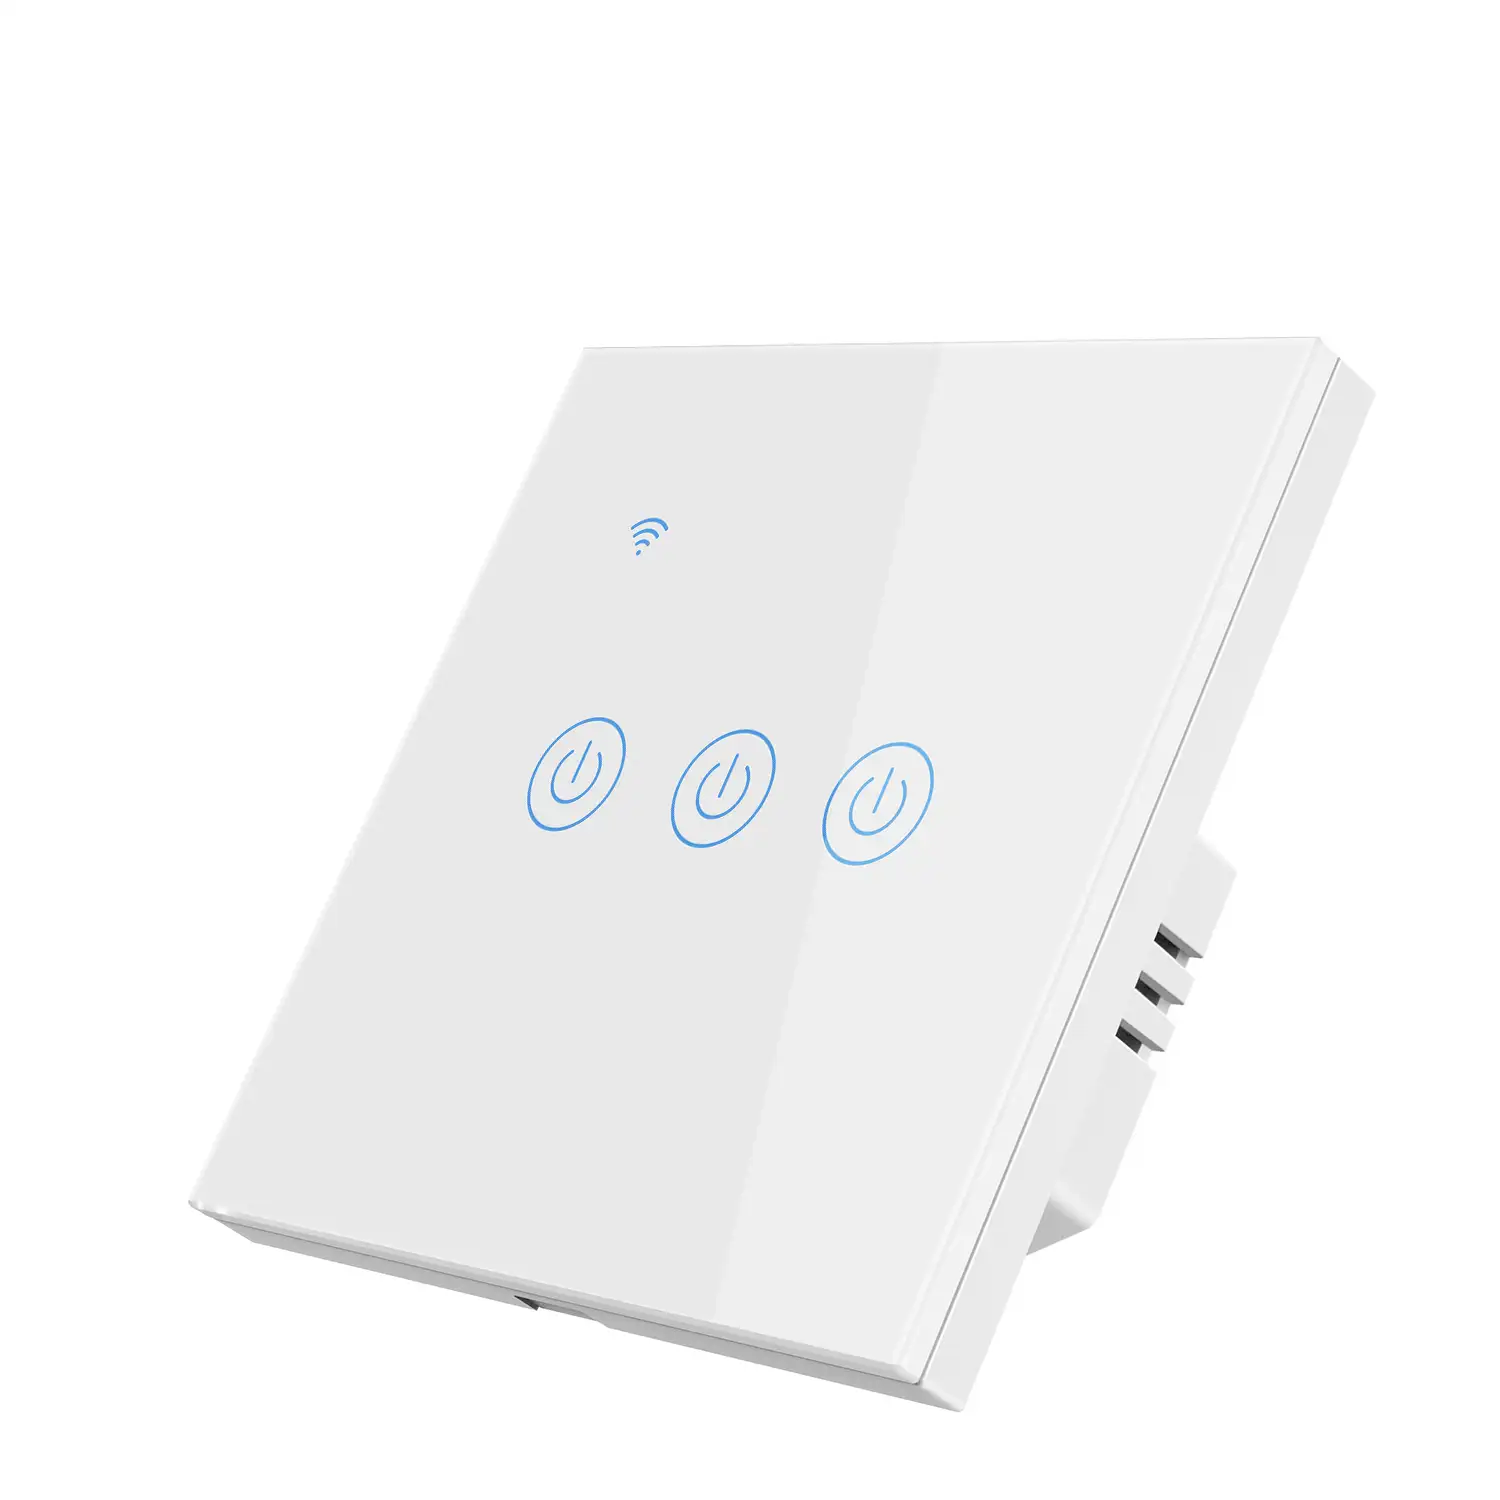 Interruptor Inteligente WiFi Blanco con 3 pulsadores. App Smart